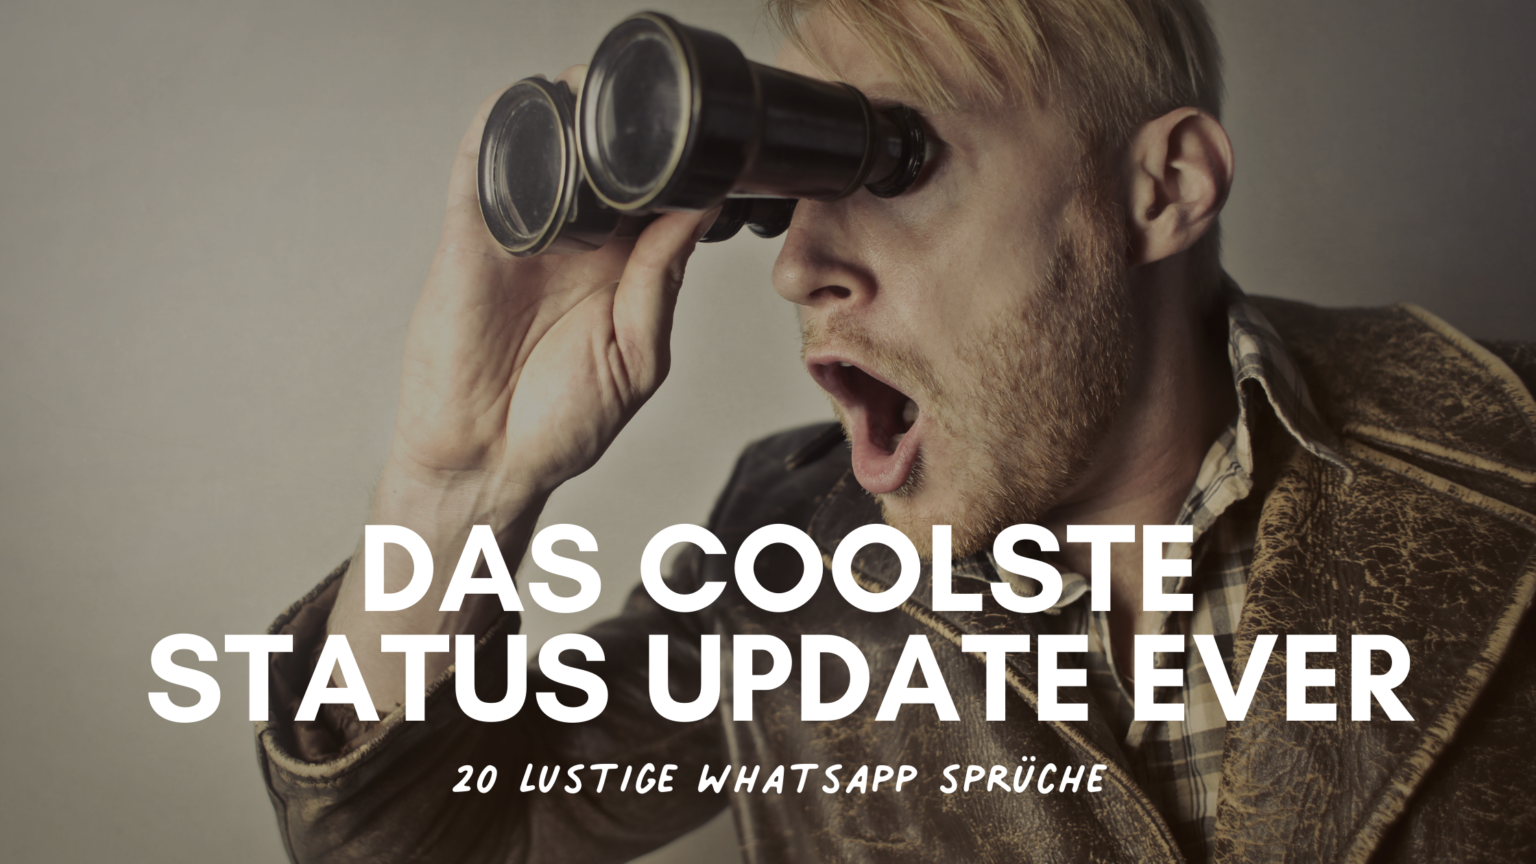 20 Lustige WhatsApp Sprüche das coolste Status Update ever